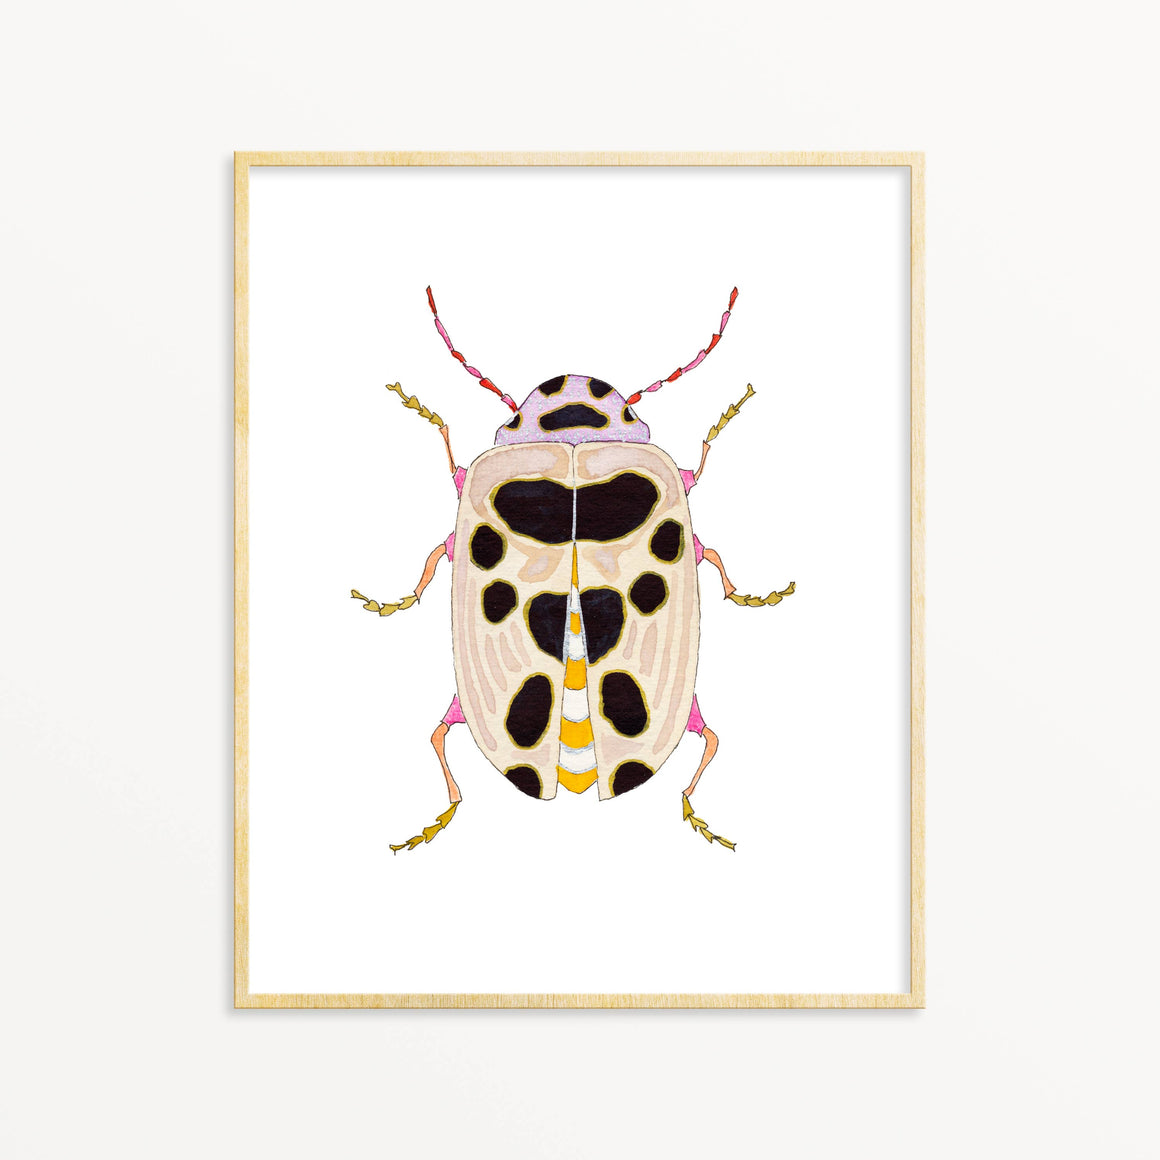 Beetle #28